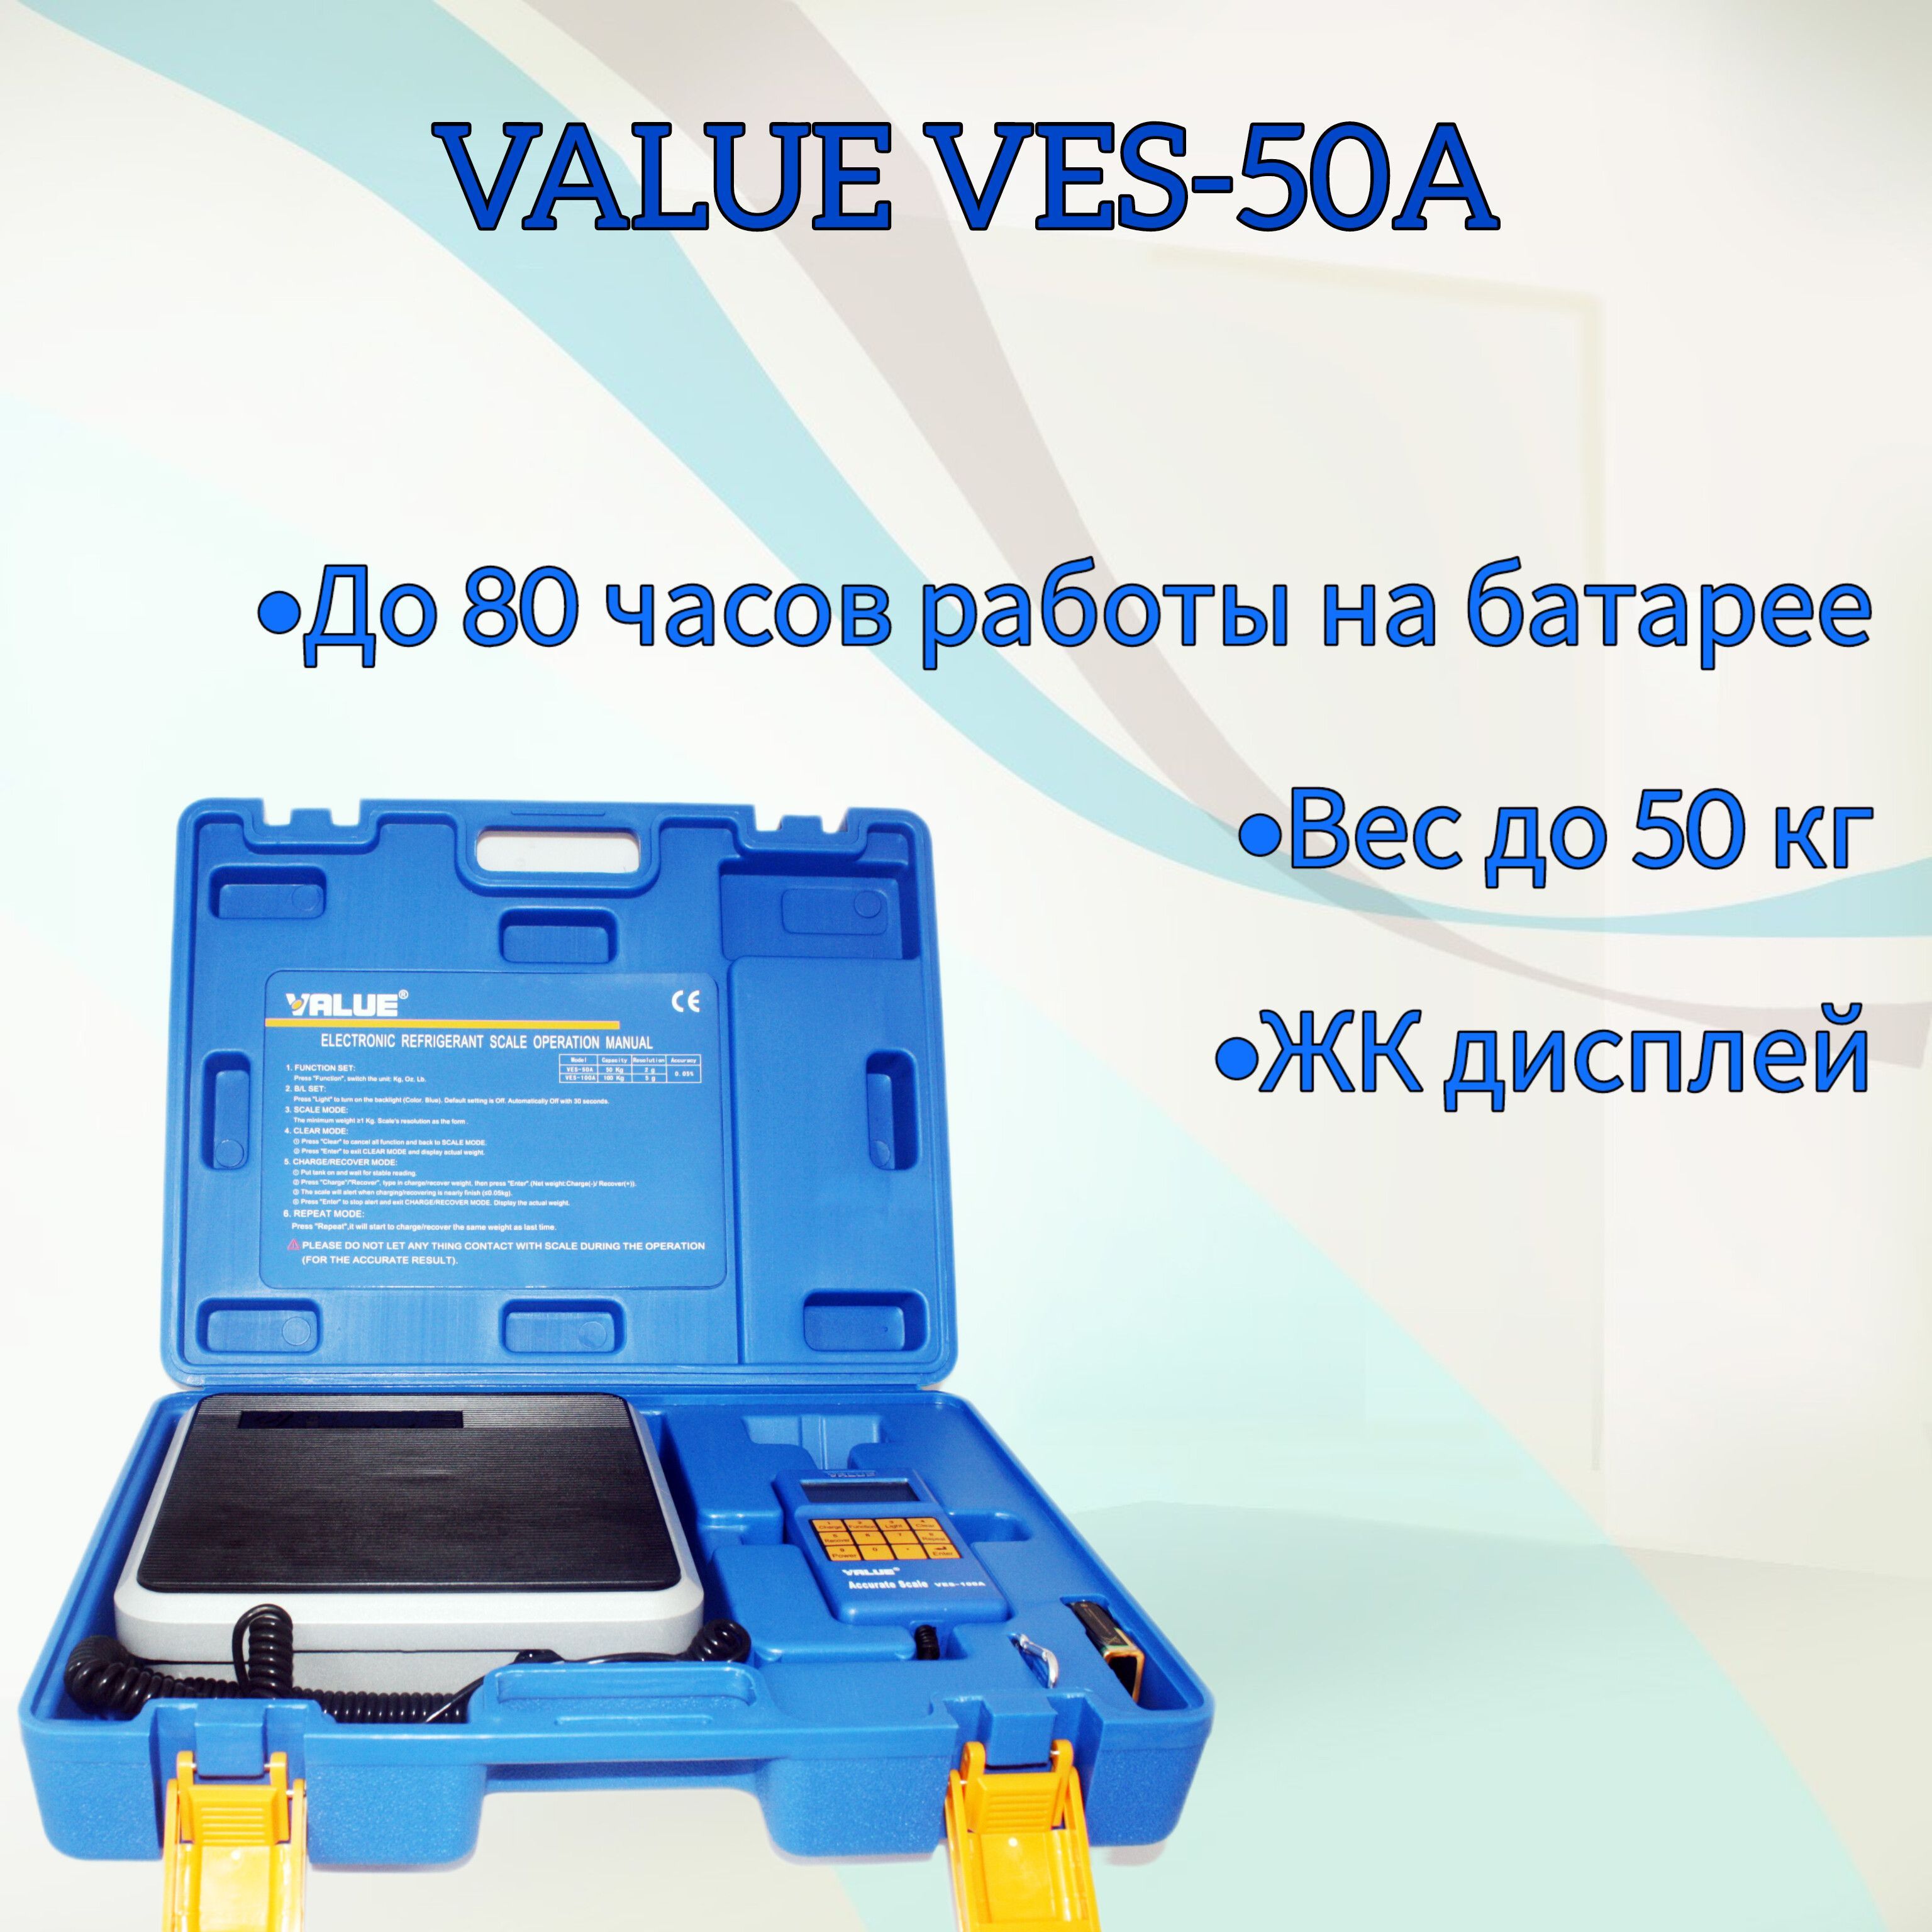 Value ves